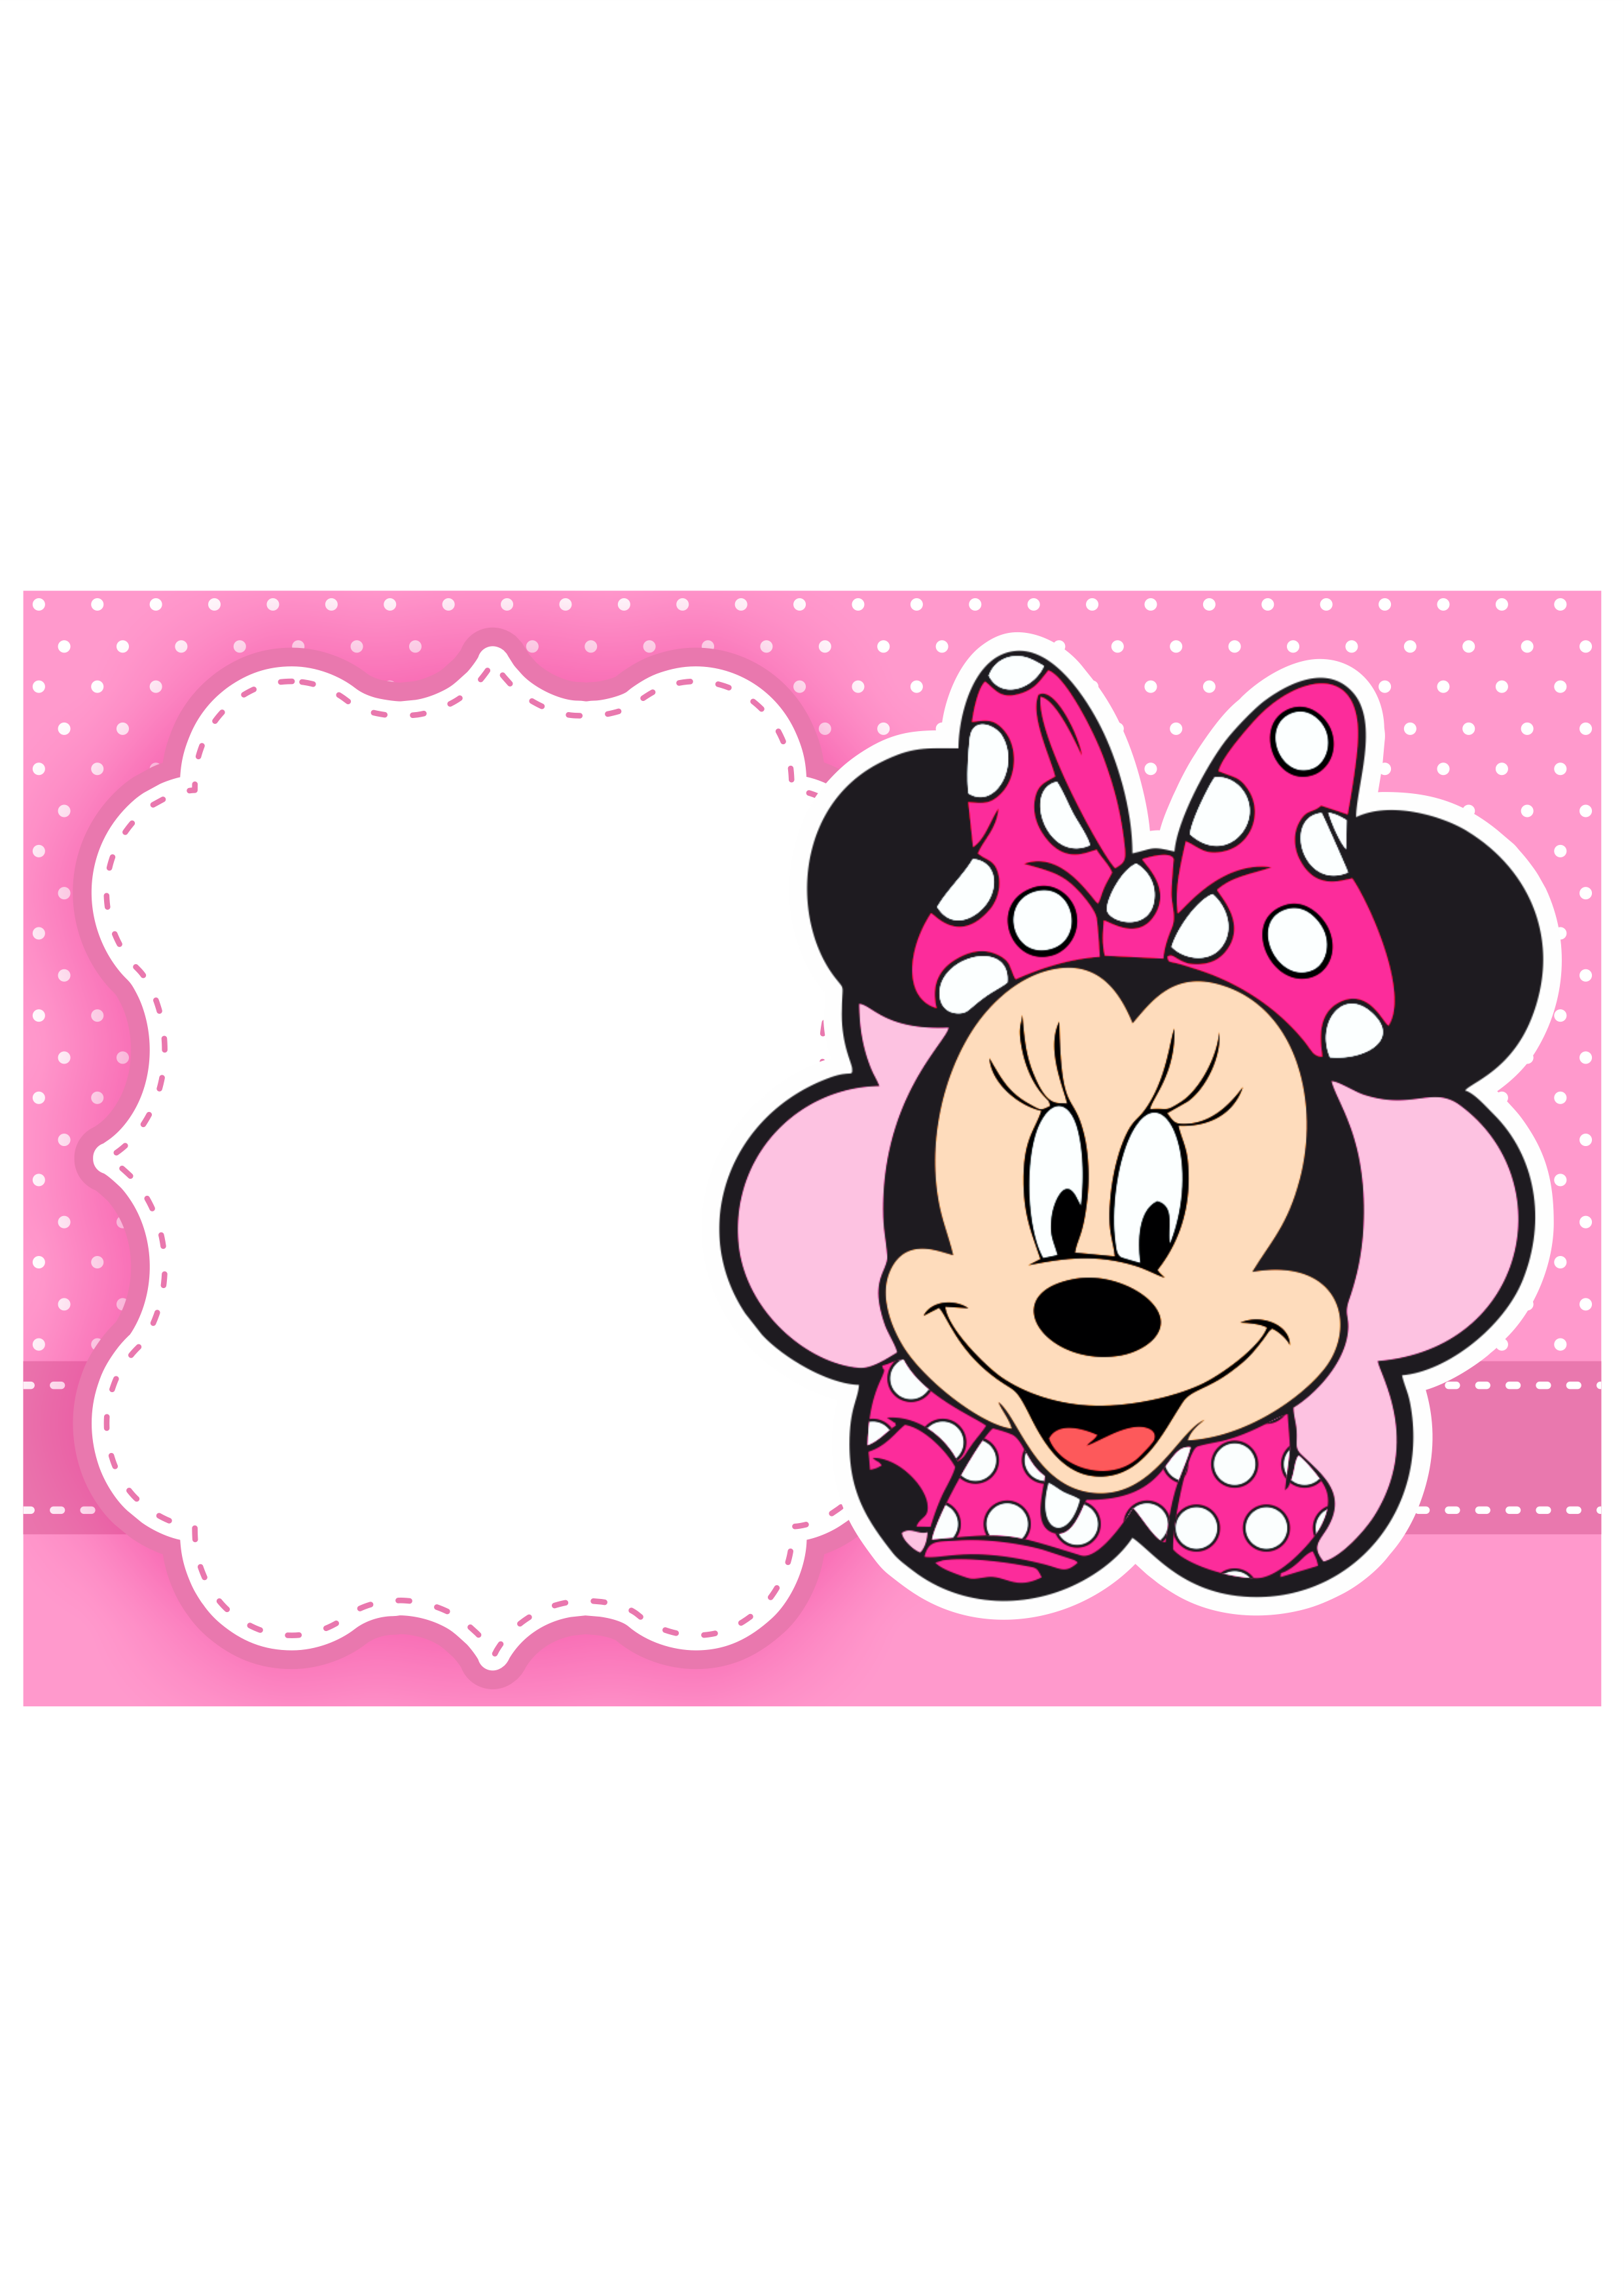 Convite digital Minnie rosa grátis pronto para editar e imprimir aniversário infantil png